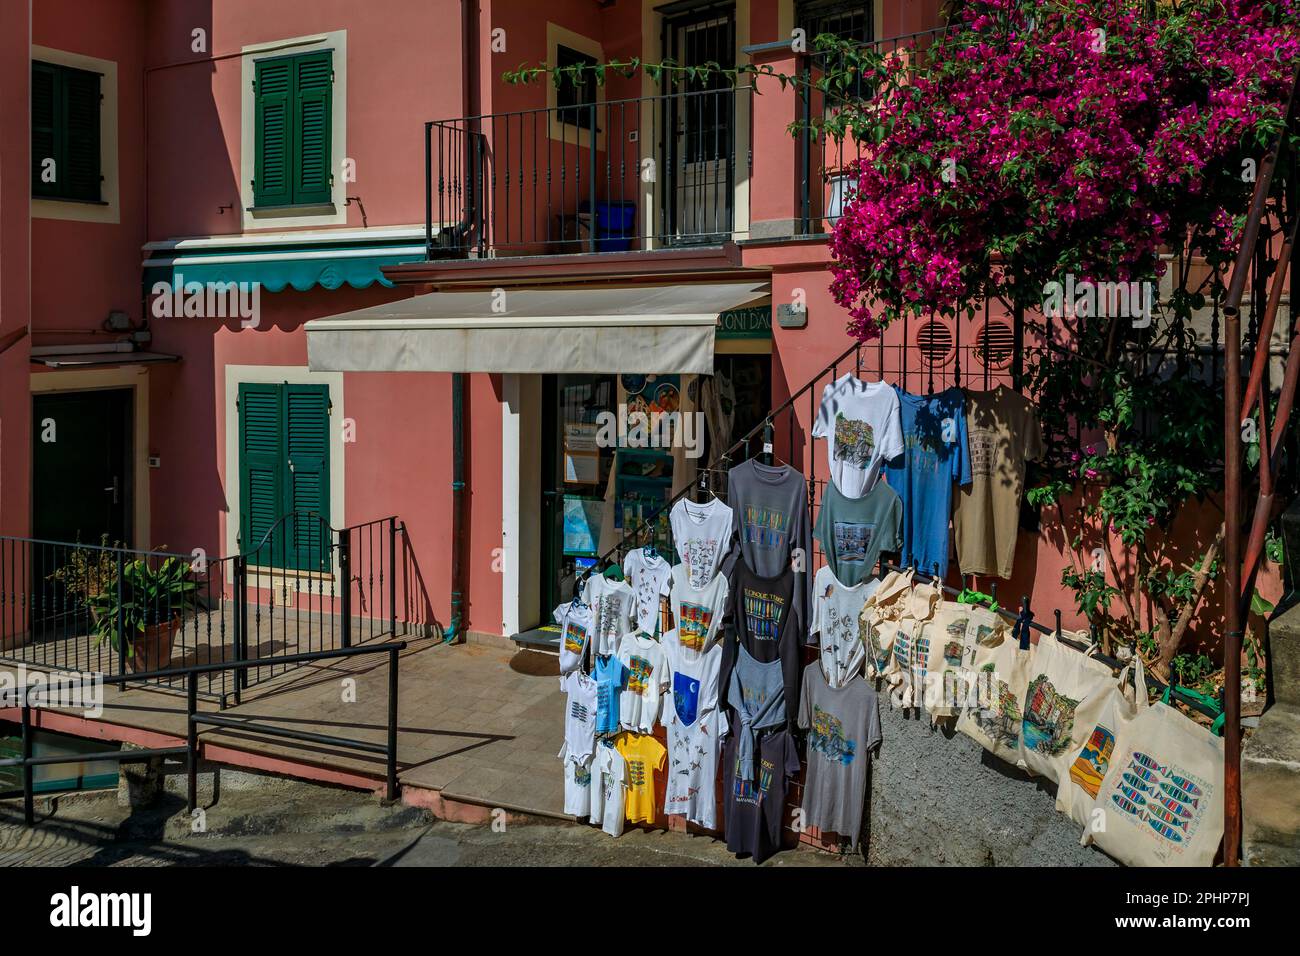 Manarola, Italia - 01 giugno 2022: Magliette ricordo delle cinque Terre in mostra presso un negozio di souvenir in una casa colorata nel centro storico sul Mar Mediterraneo Foto Stock